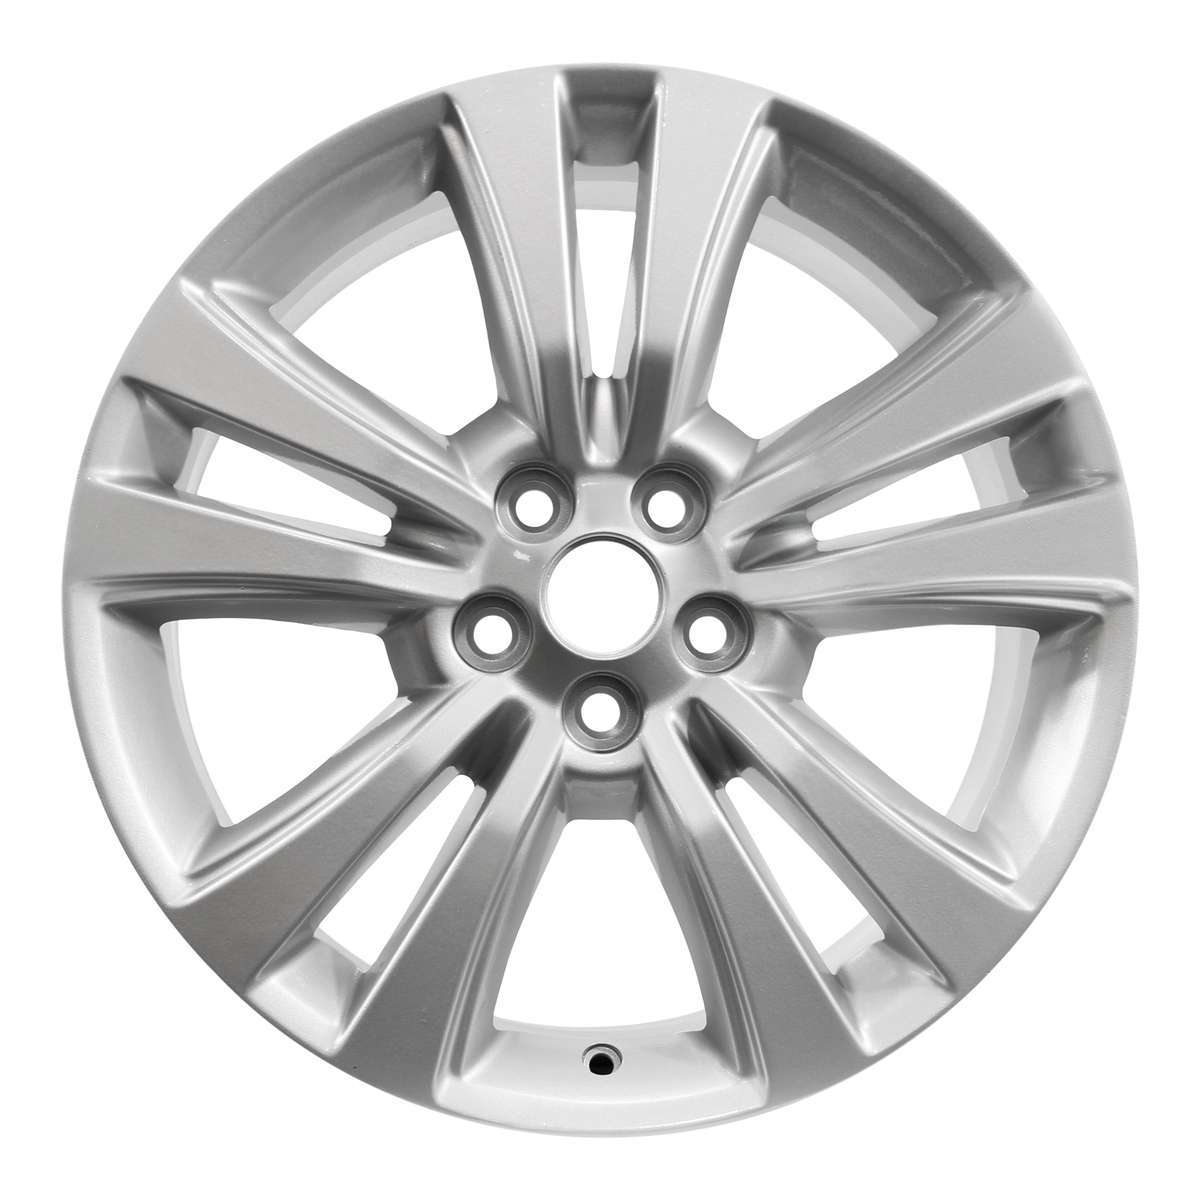 2018 Lincoln MKX 18" OEM Wheel Rim W10071S